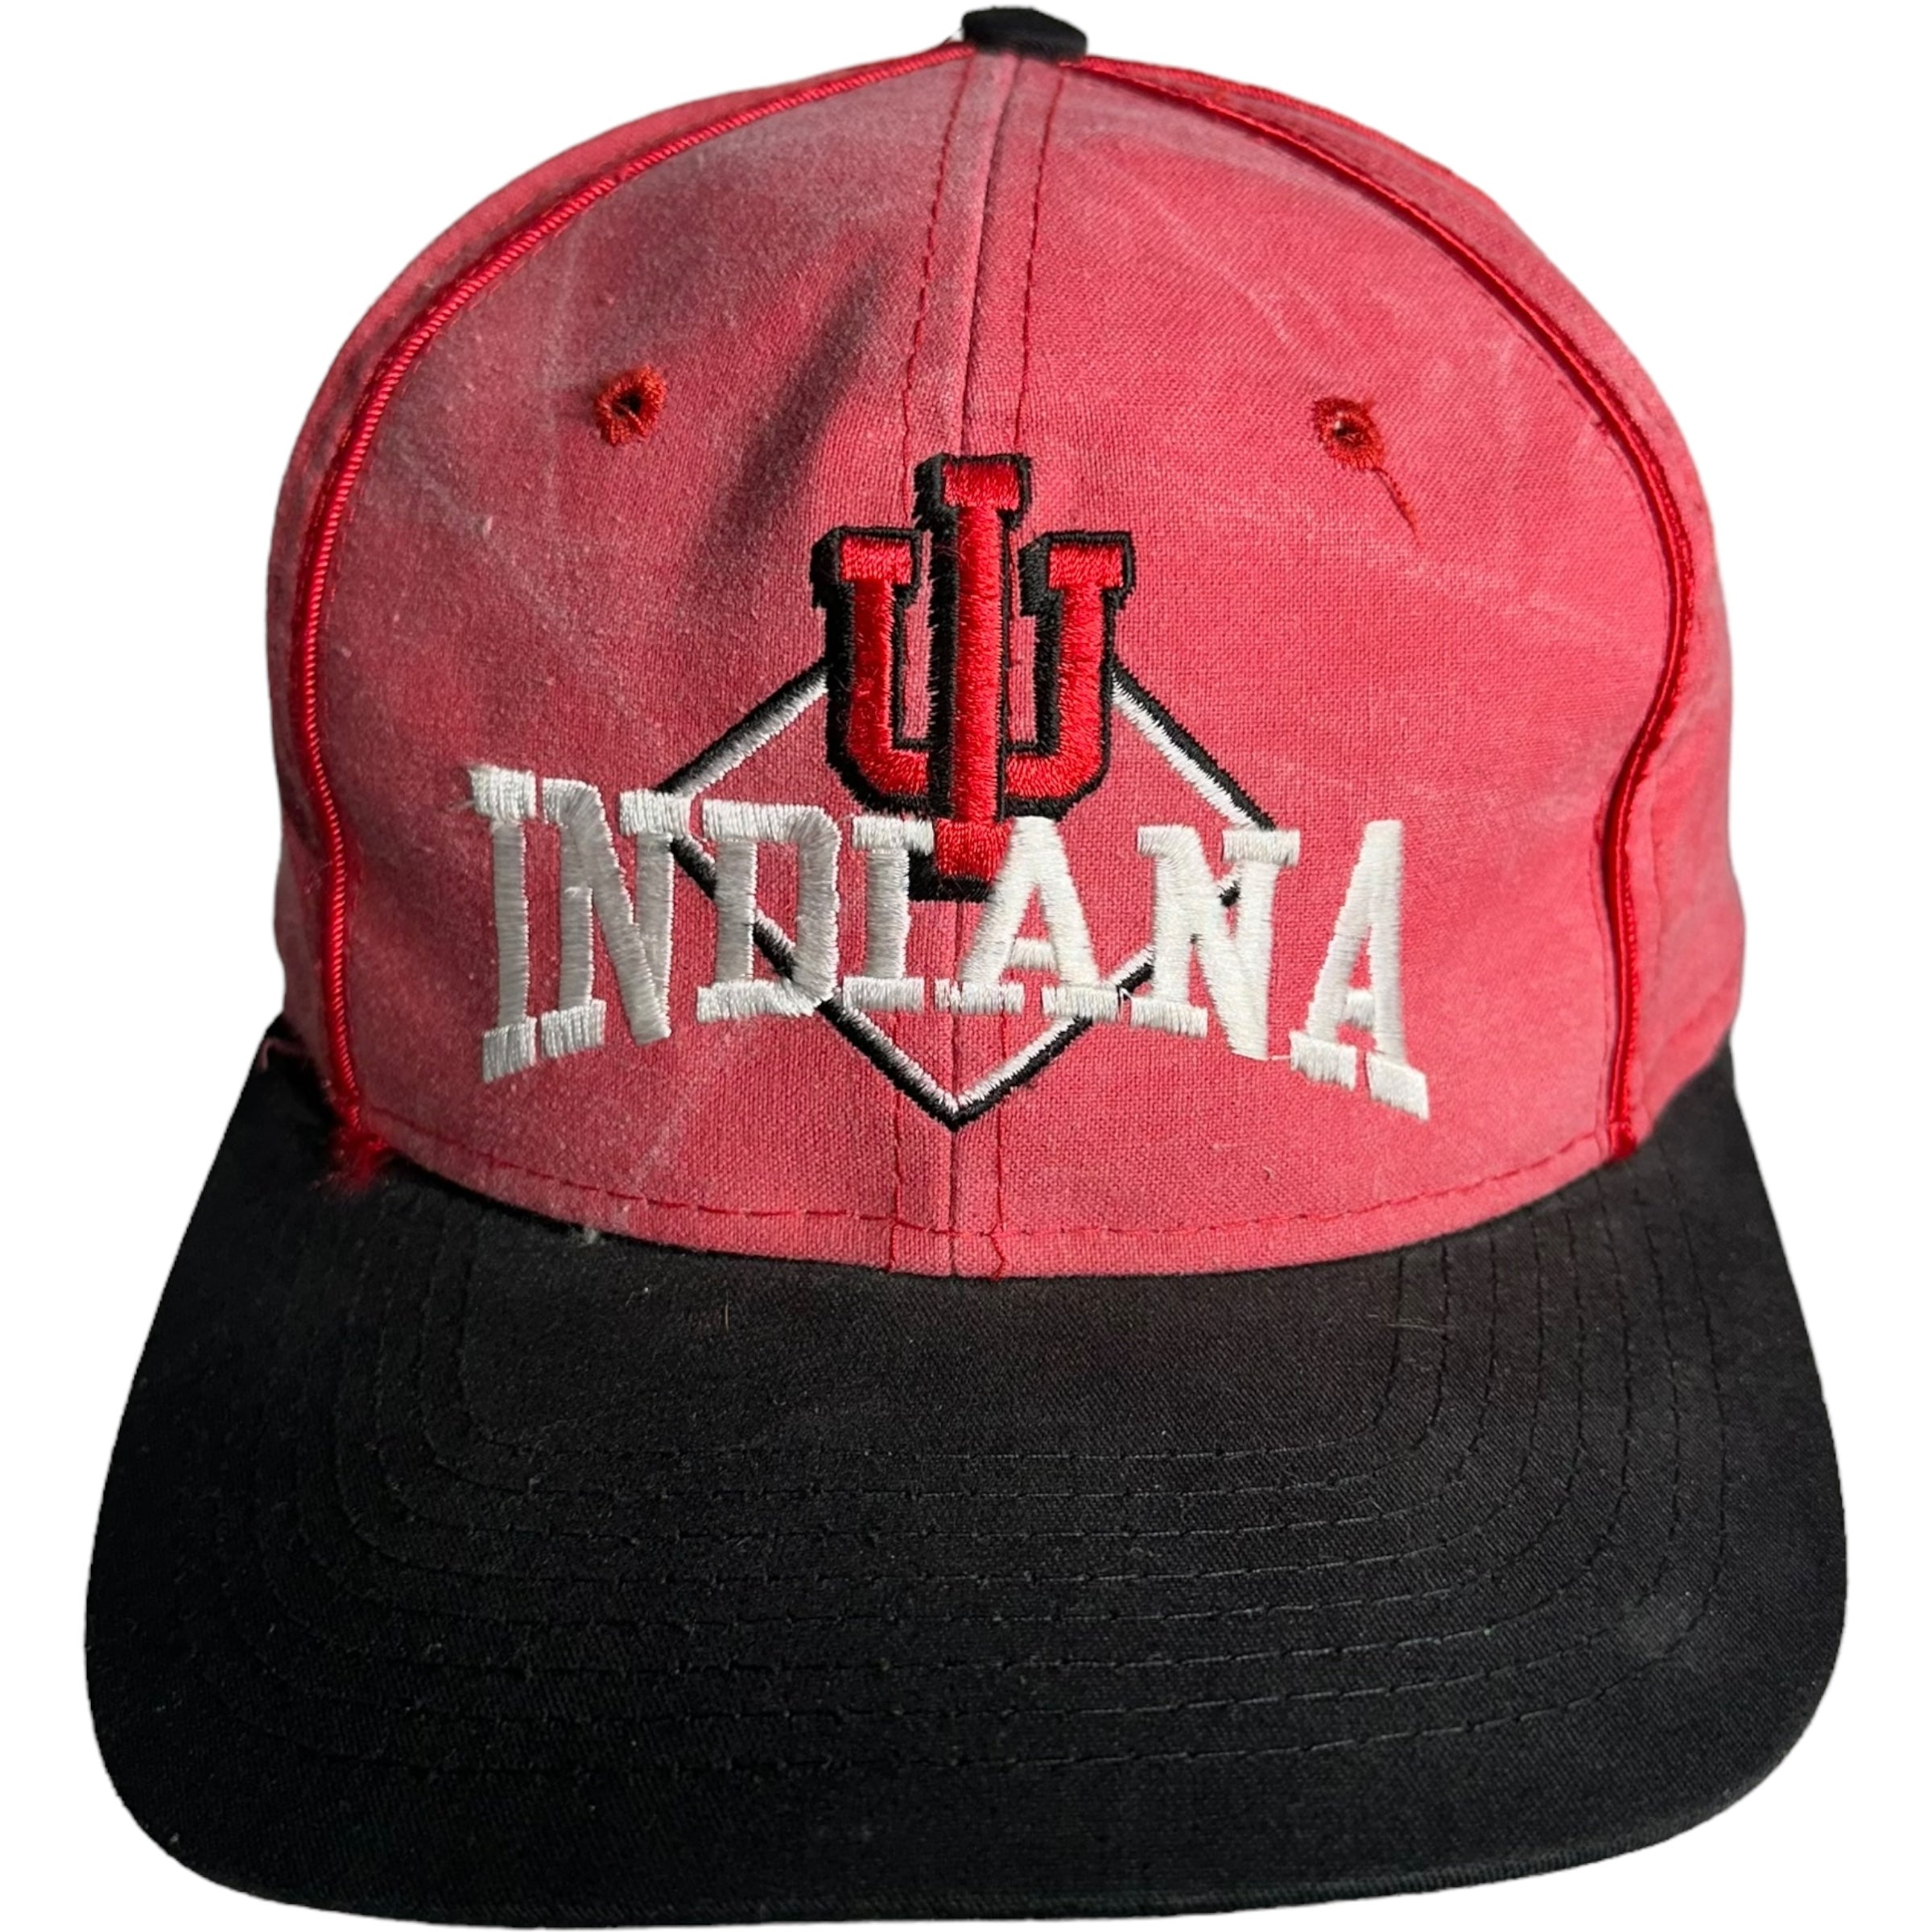 Vintage Indiana University Hoosiers Snapback Hat